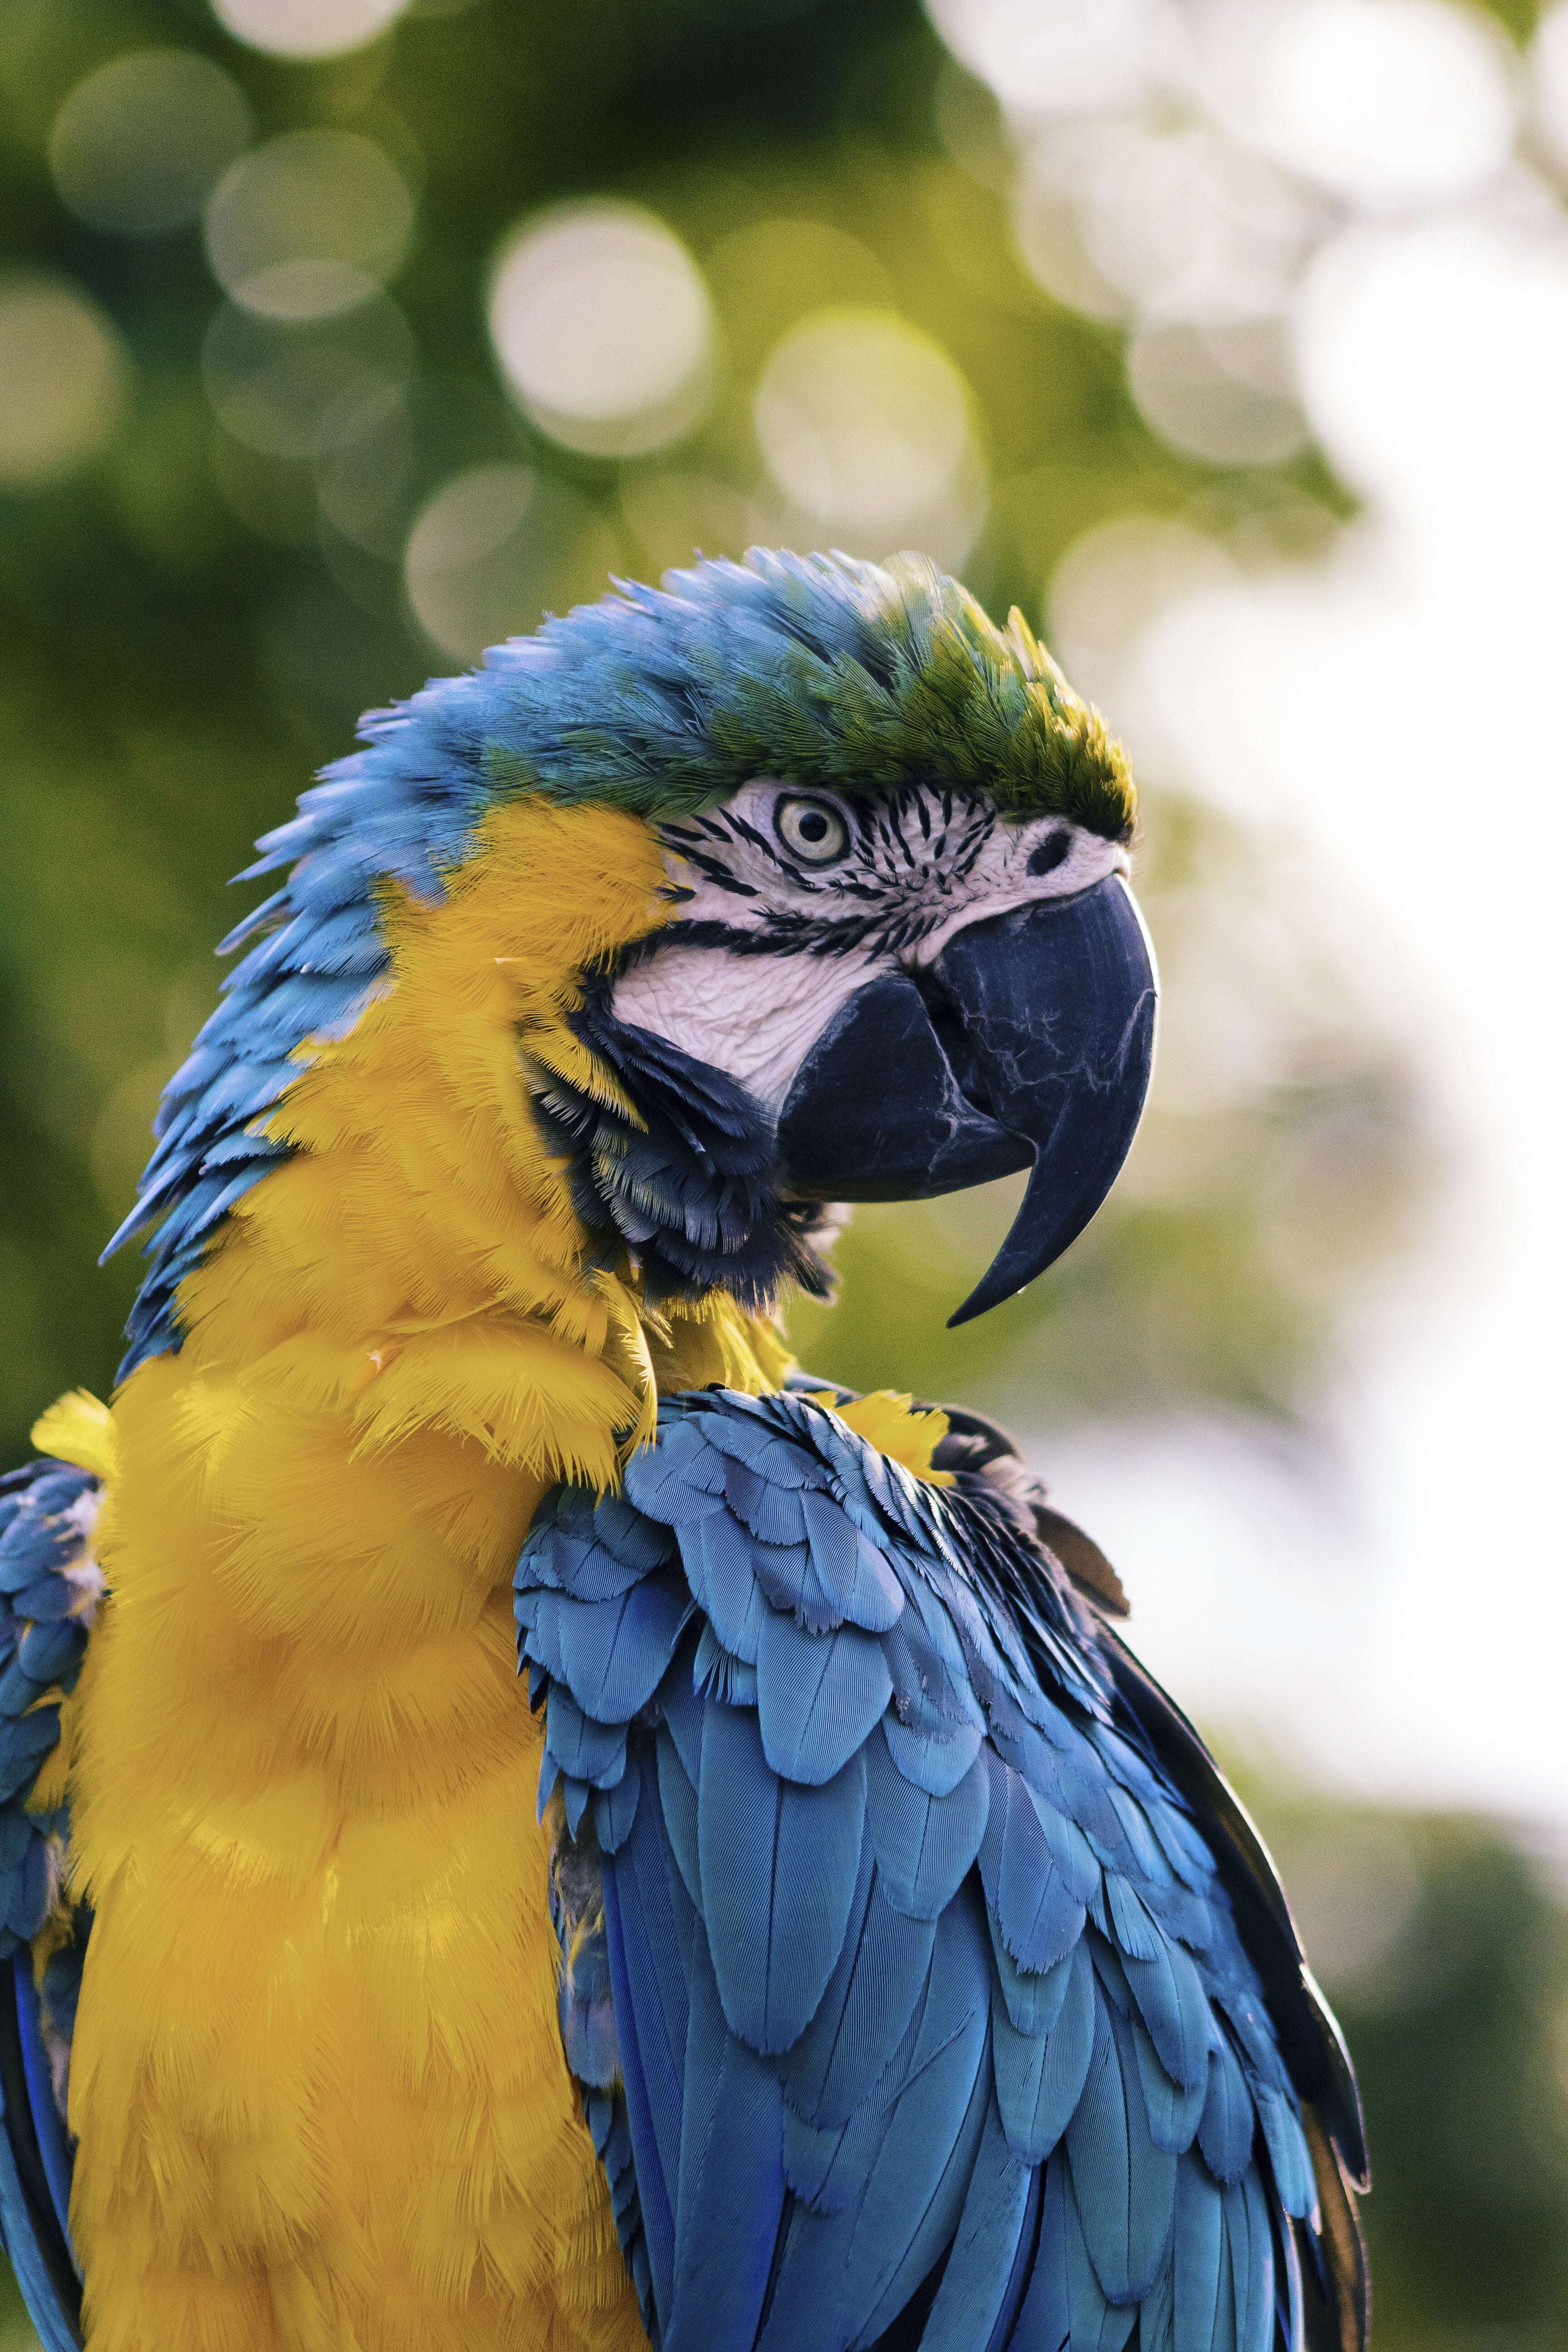 热带雨林中的鸟类大力士——金刚鹦鹉,五彩斑斓且"巧言善辩"